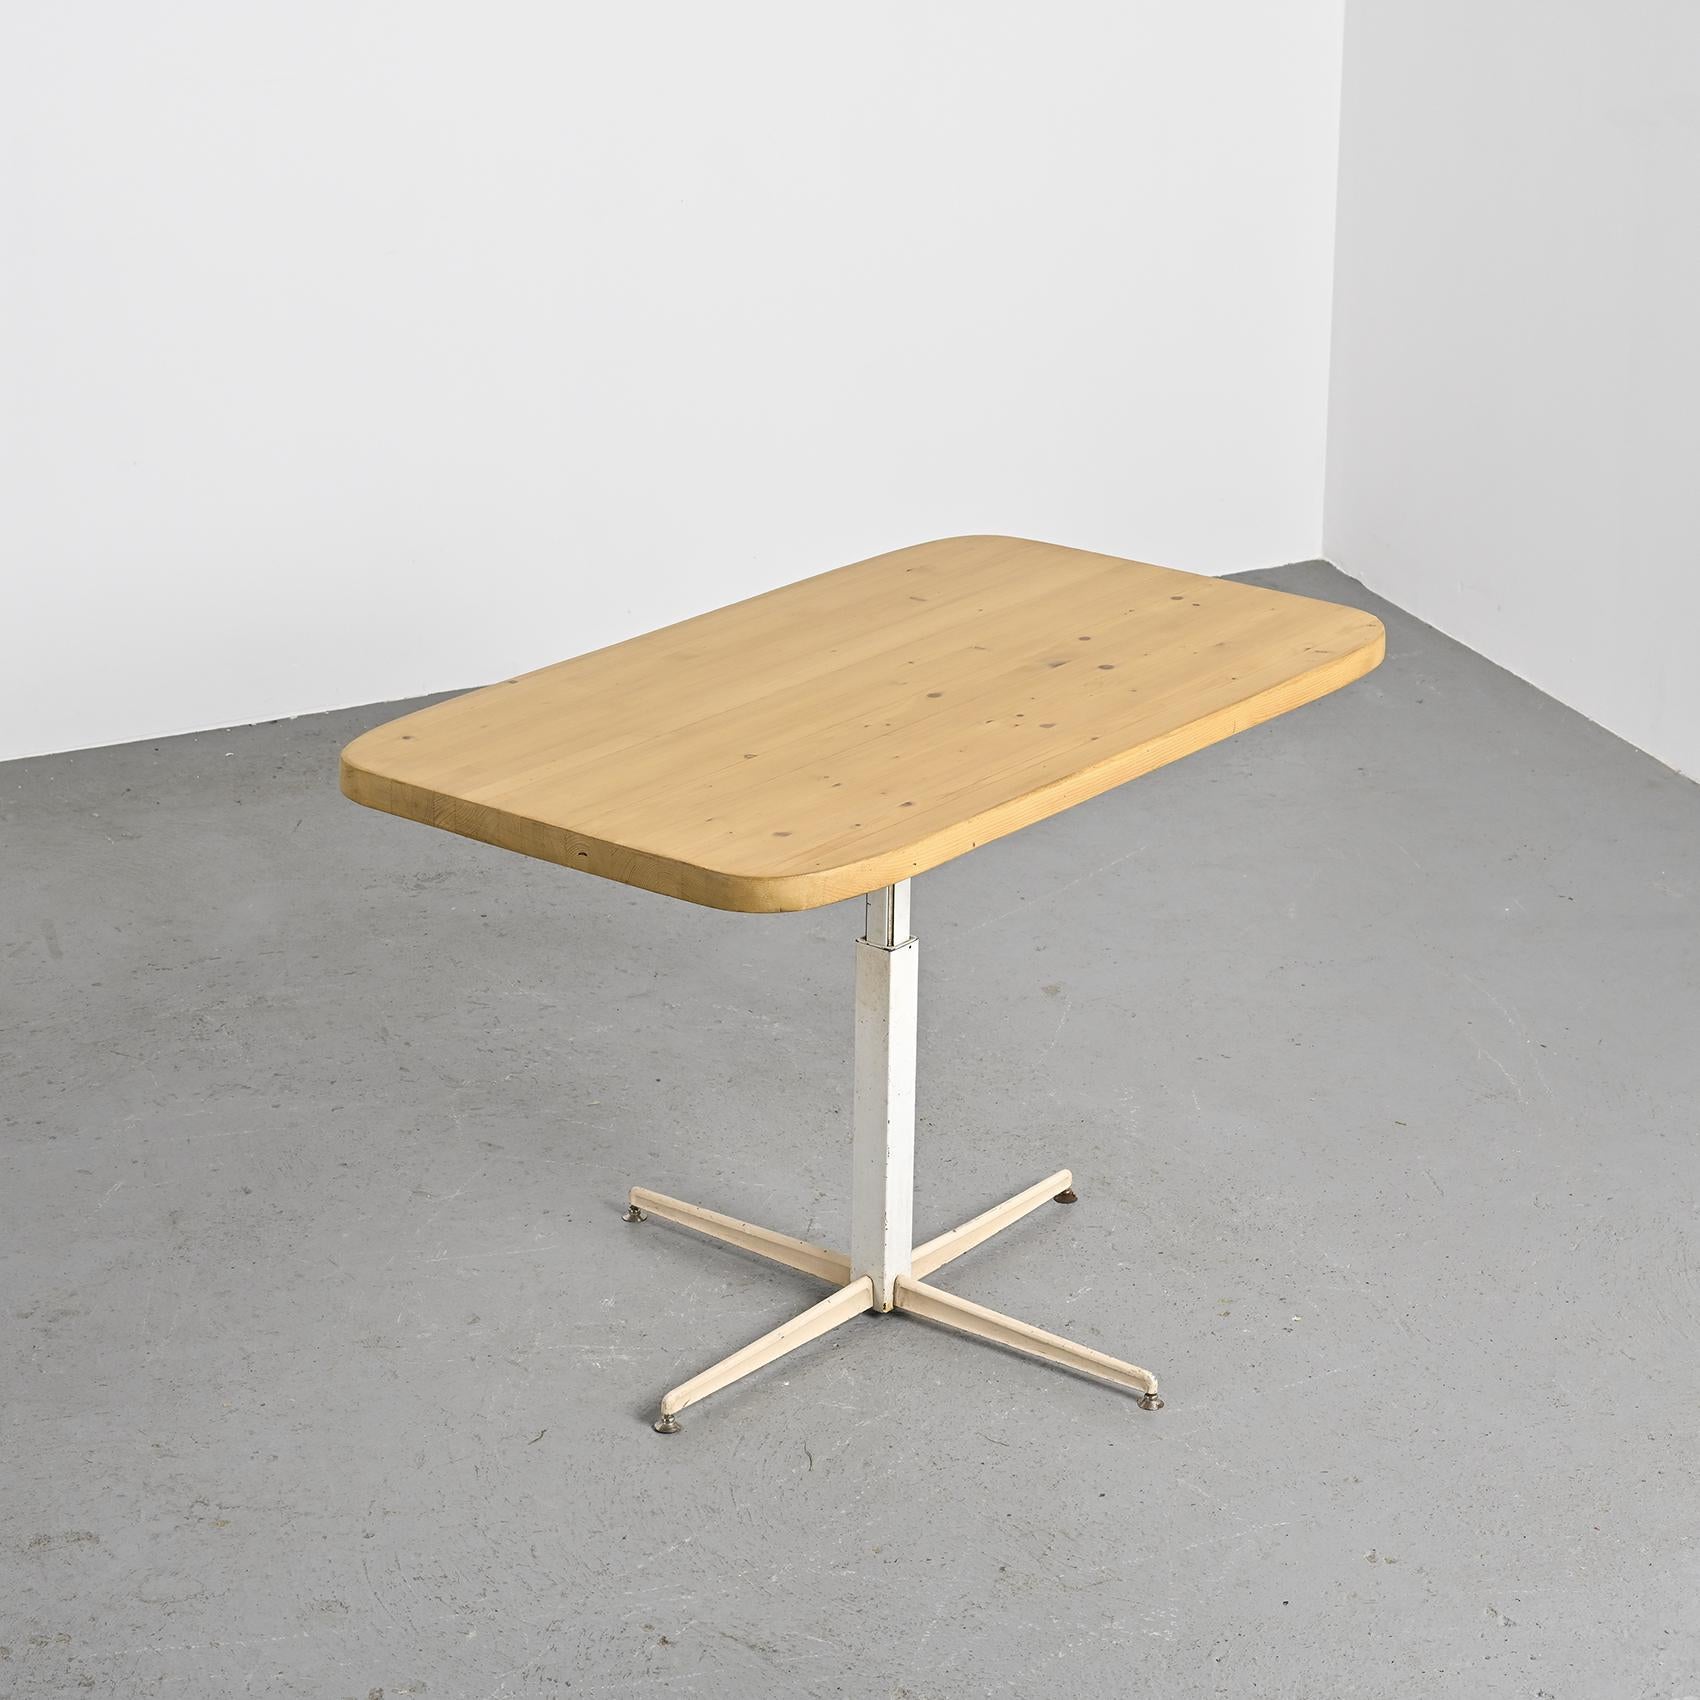 Seltener höhenverstellbarer rechteckiger Tisch mit abgerundeten Kanten, entworfen von Charlotte Perriand für den Ferienort Les Arcs in den 1970er Jahren.

Es hat eine verleimte, laminierte Kiefernplatte von rechteckiger Form mit einer schönen Patina